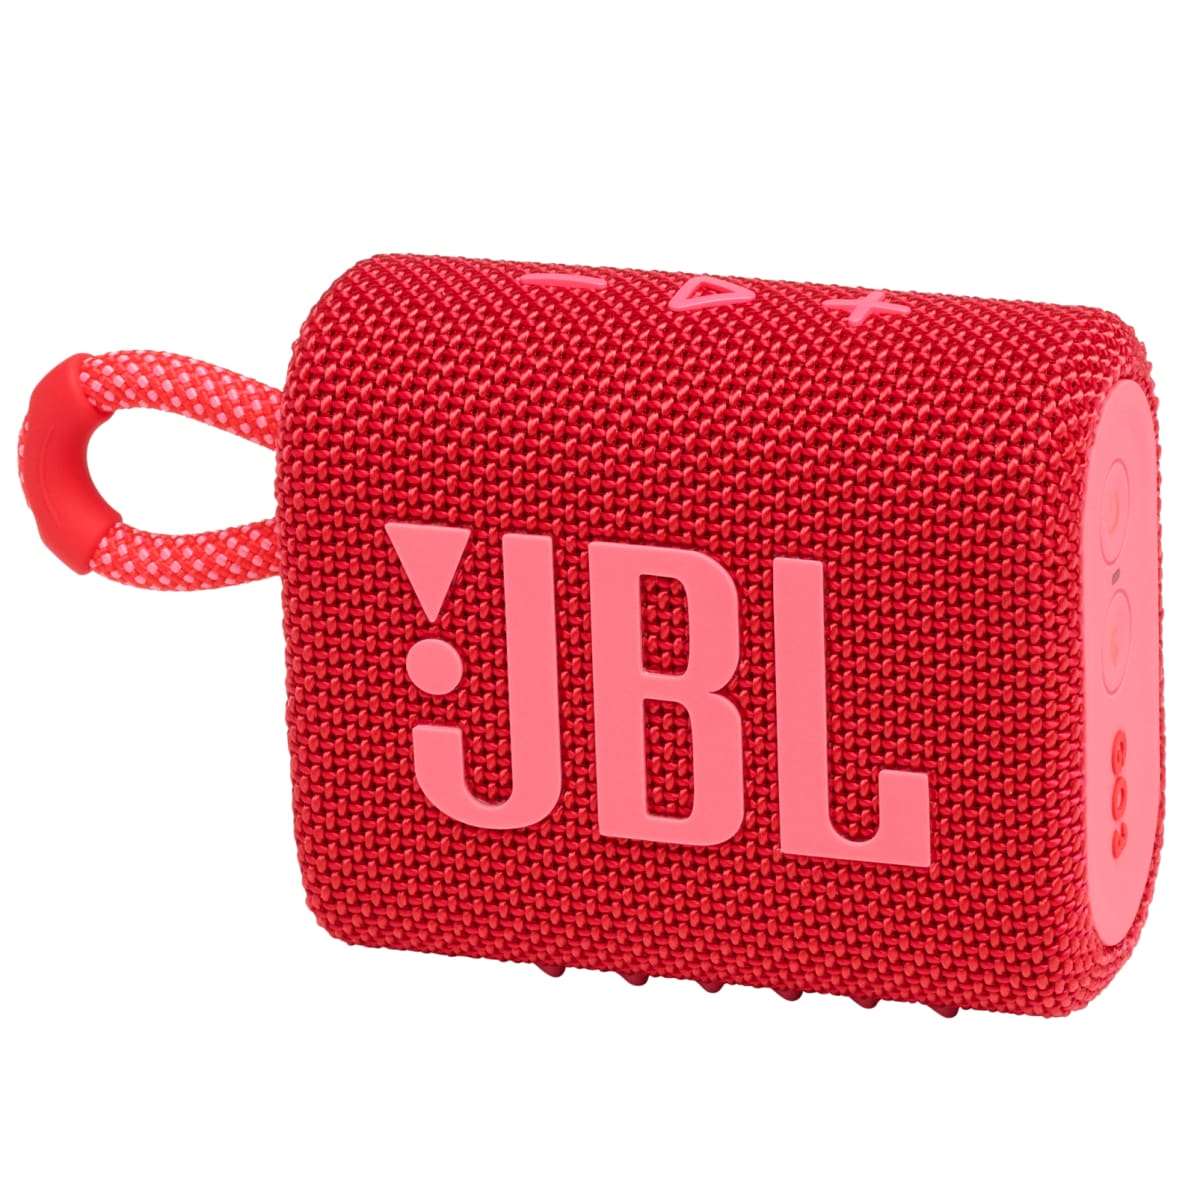 JBL GO 3 Portable Waterproof Speaker - Red - Bluetooth